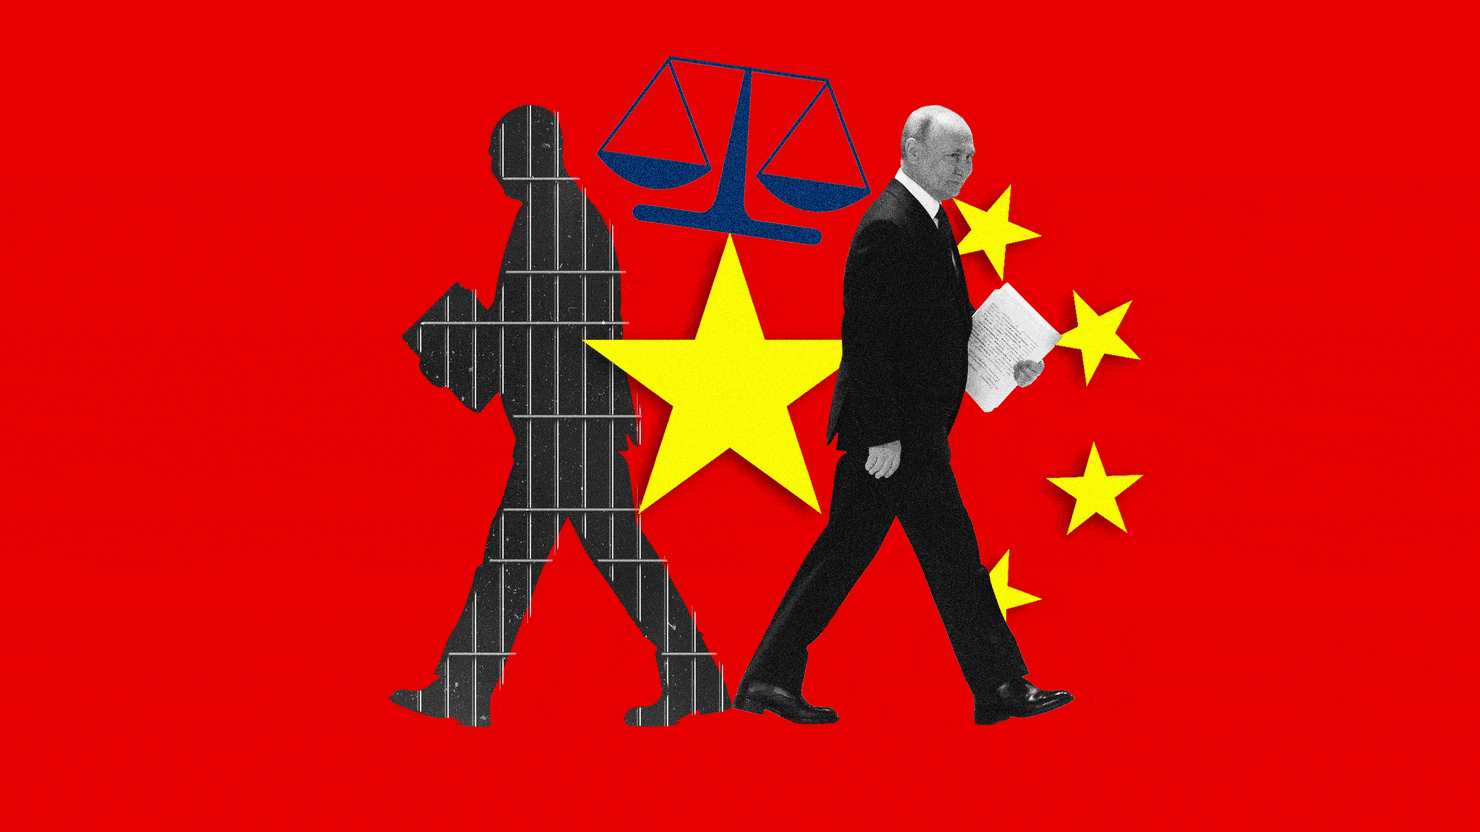 国際刑事裁判所からの逮捕状が出た後、プーチン大統領はなぜ初めての大規模な海外旅行で中国を訪れるのか?